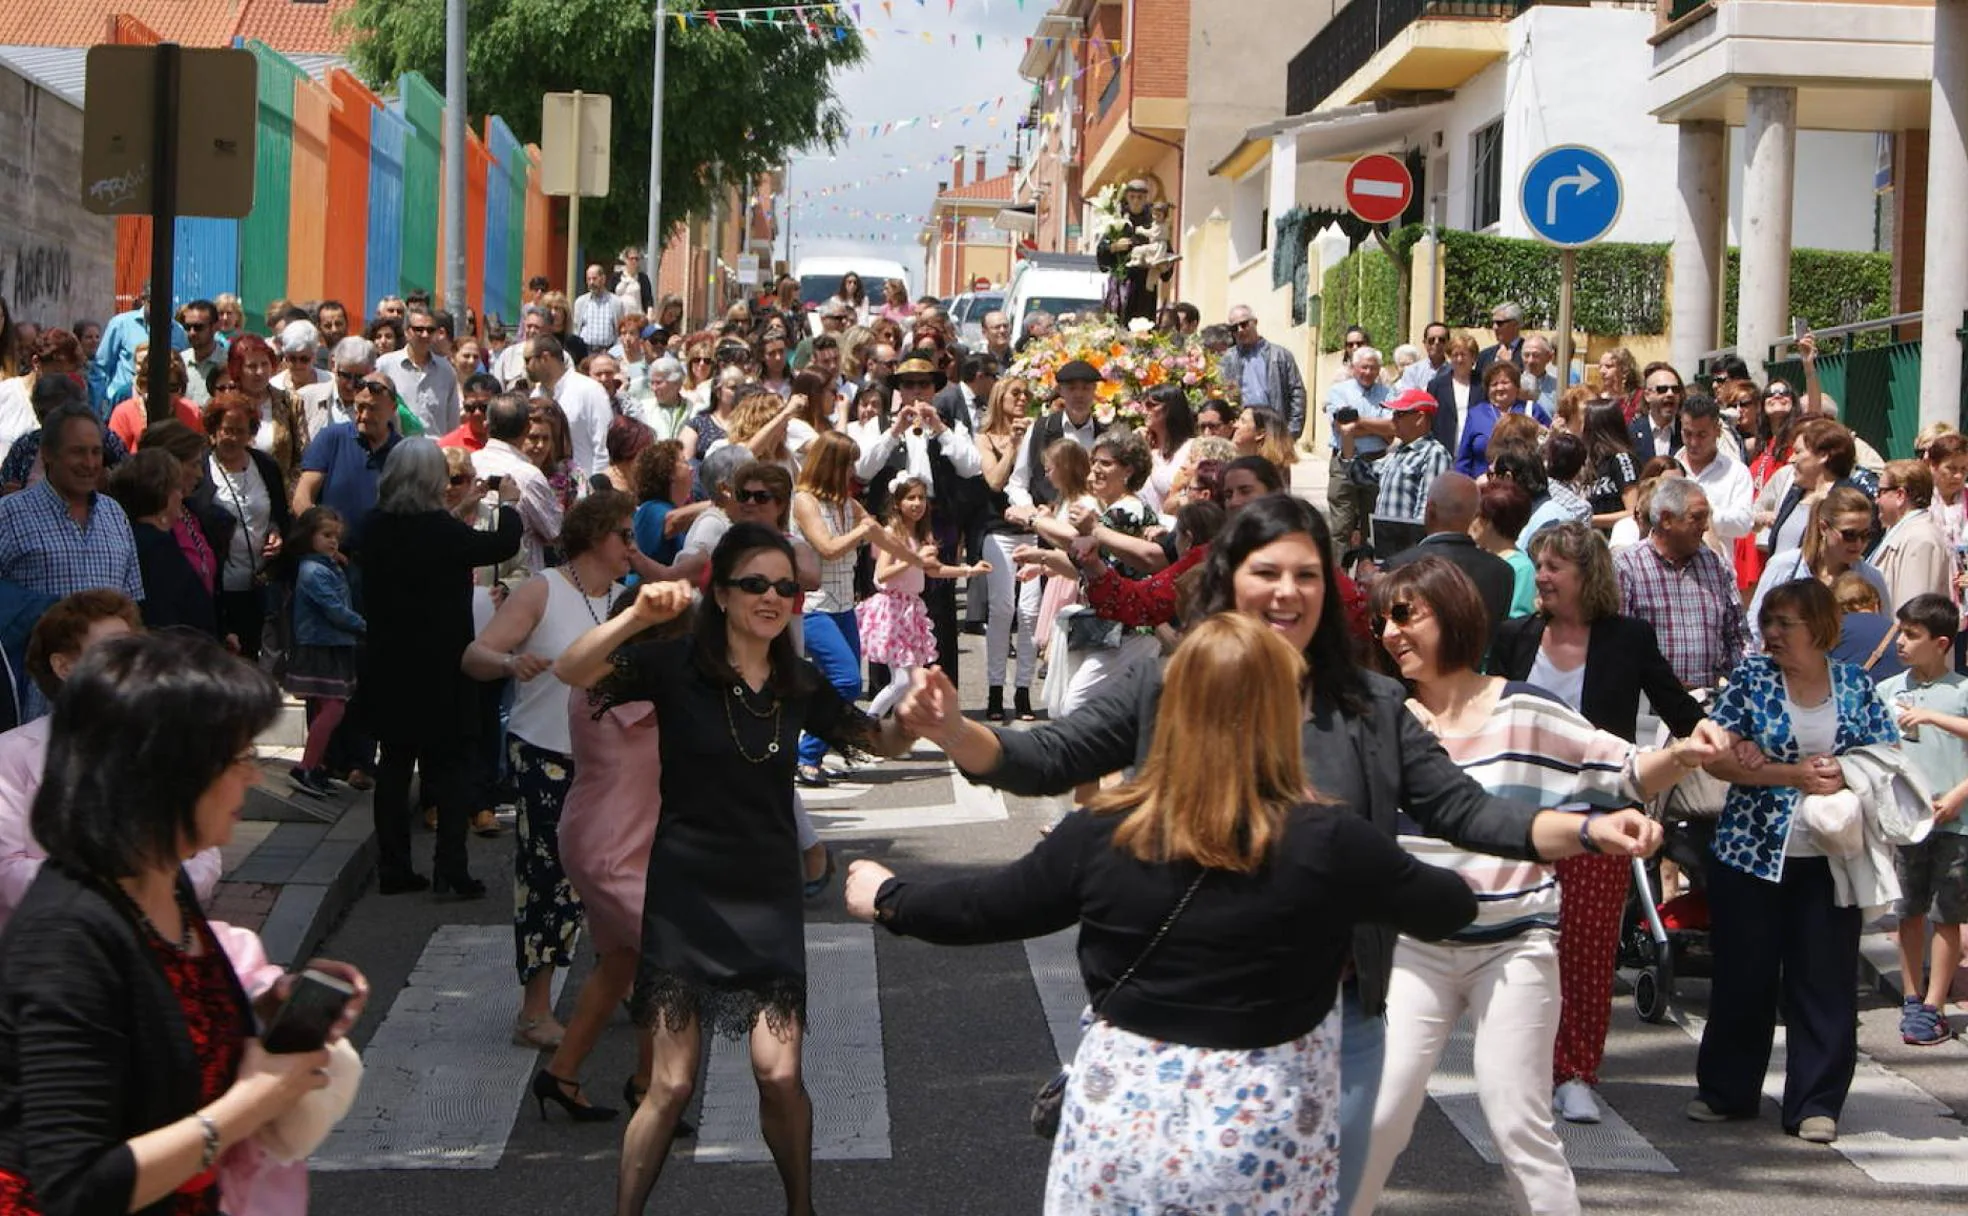 Multitudinaria procesión de San Antonio en LaFlecha, al que es tradicional bailar jotas.